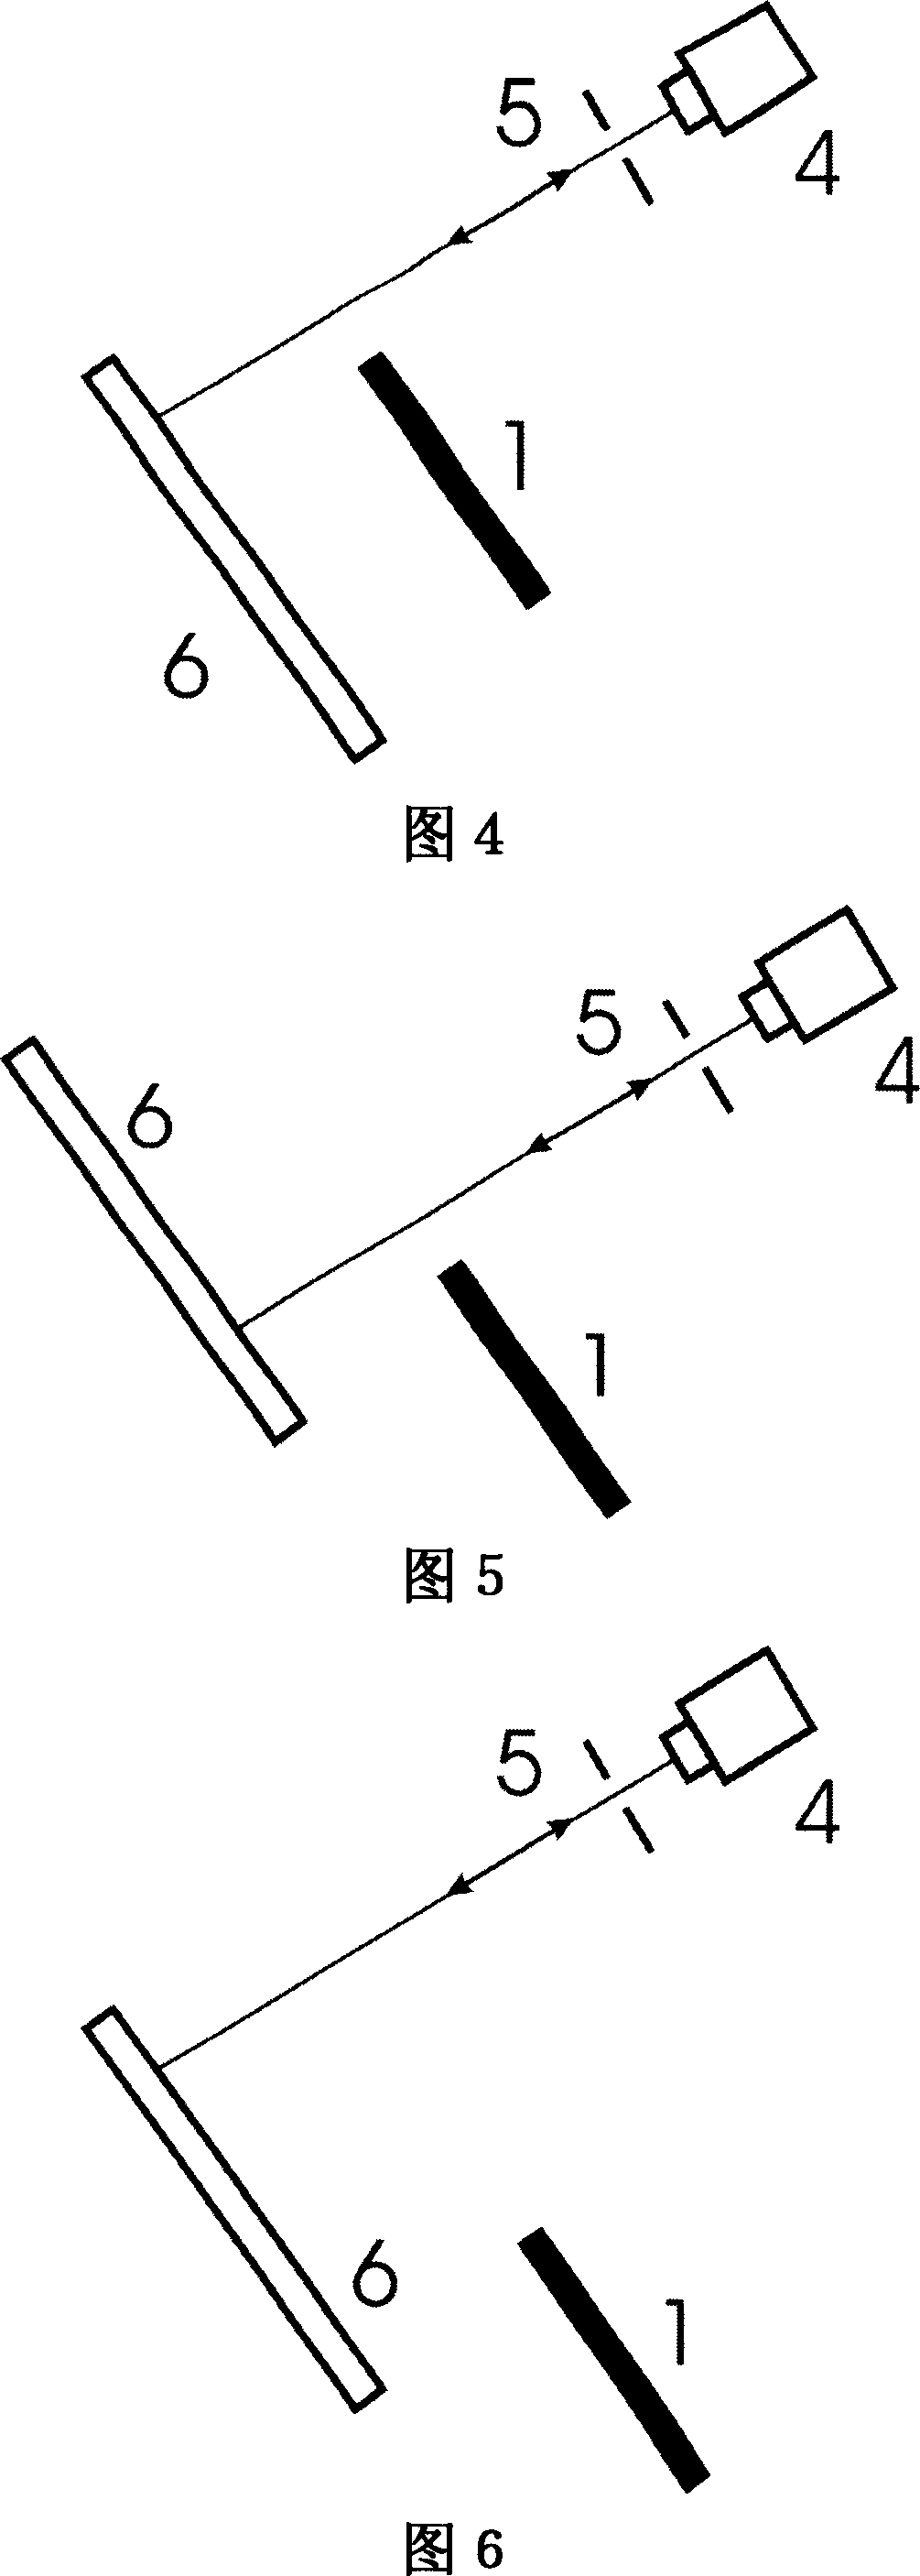 Regulating method of parallel grating pair